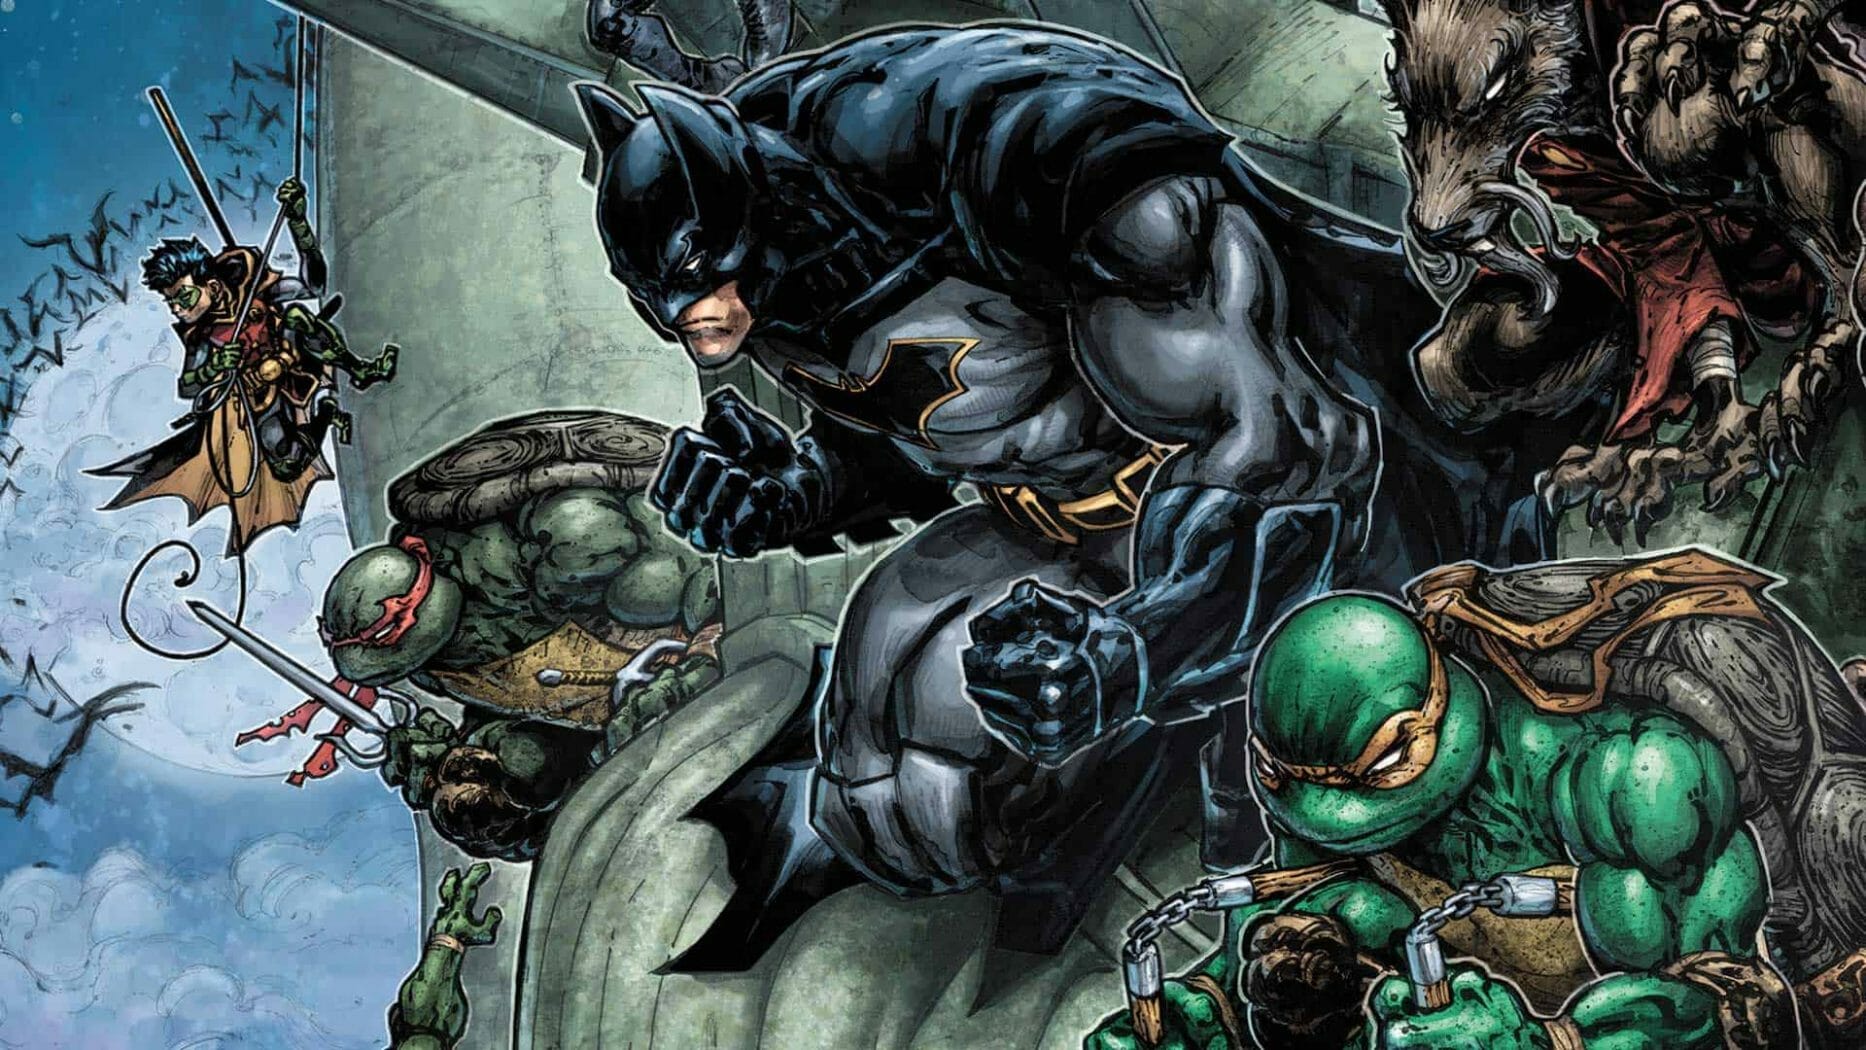 Batman vs Teenage Mutant Ninja Turtles announced